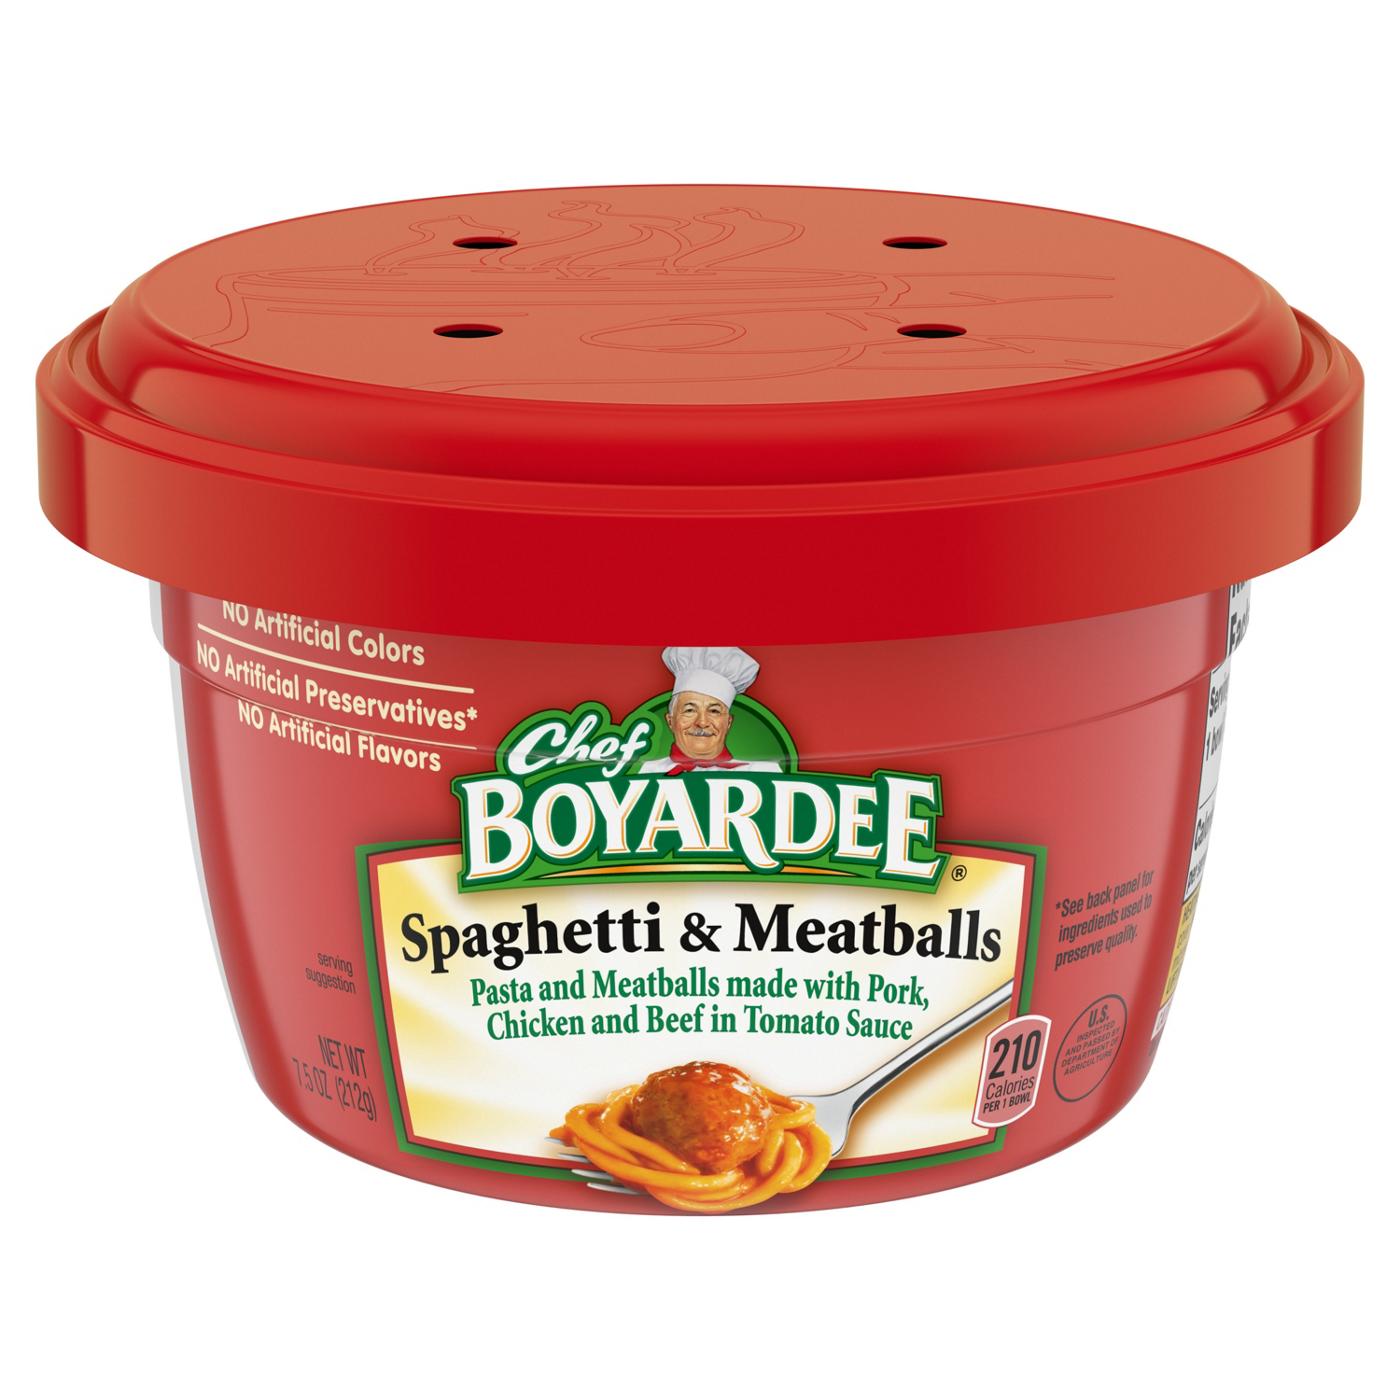 Chef Boyardee Spaghetti & Meatballs in Tomato Sauce; image 1 of 7